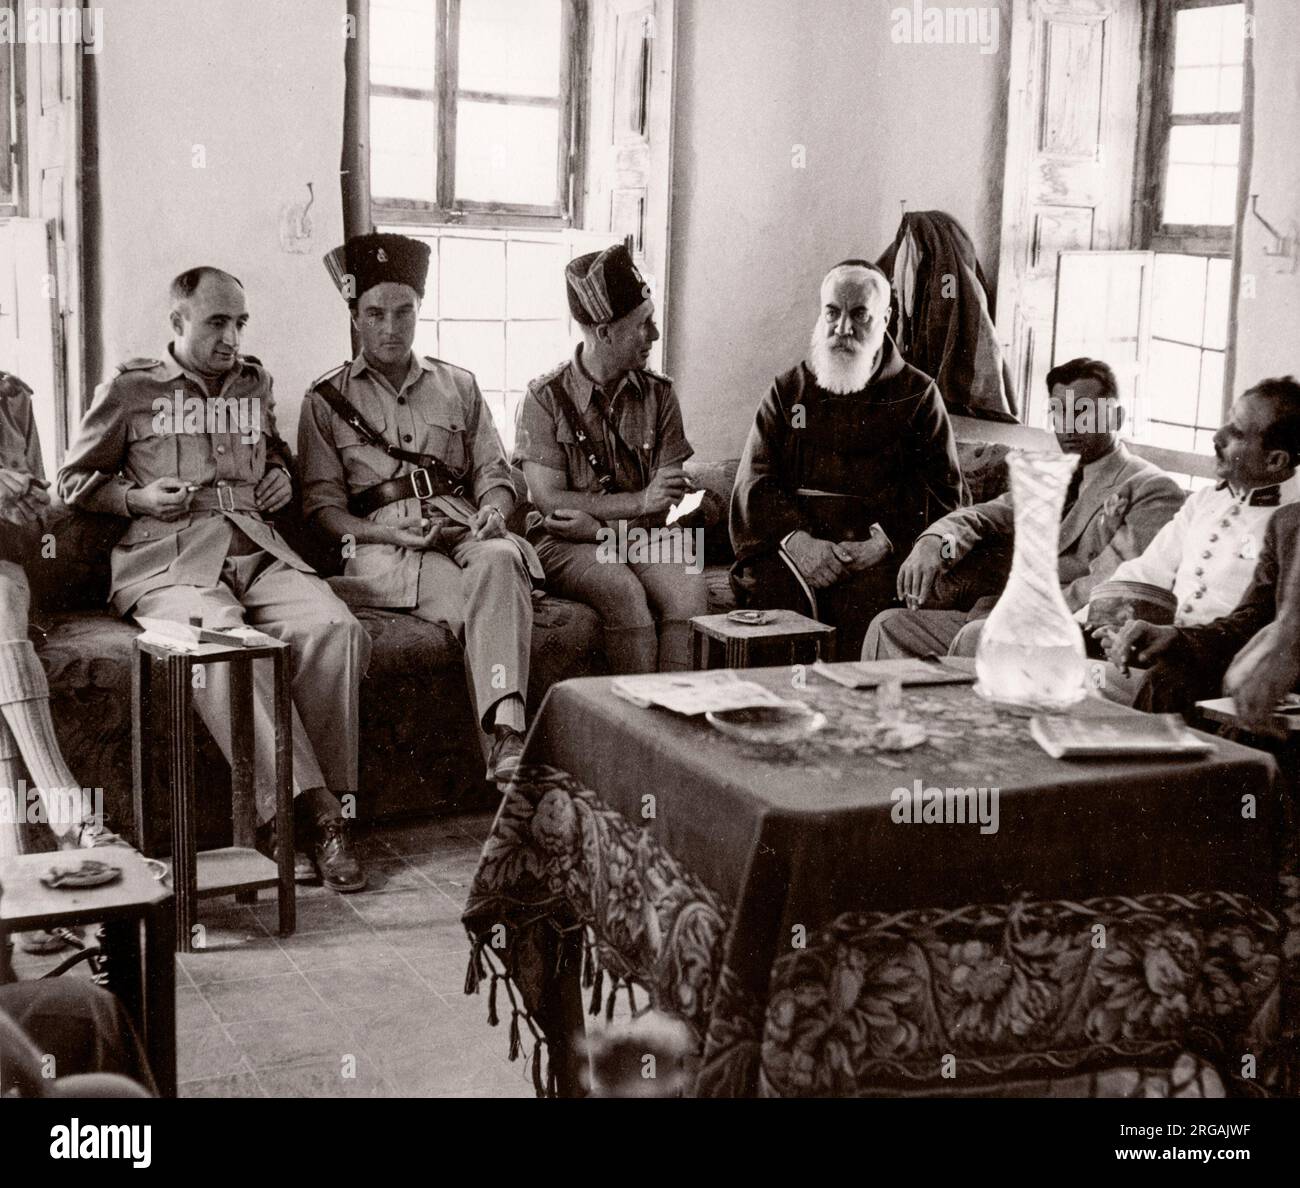 1943 Syrie - célébration du festival de l'Eid à Bobline Photographie par un officier de recrutement de l'armée britannique stationnés en Afrique de l'est et au Moyen-Orient pendant la Seconde Guerre mondiale Banque D'Images